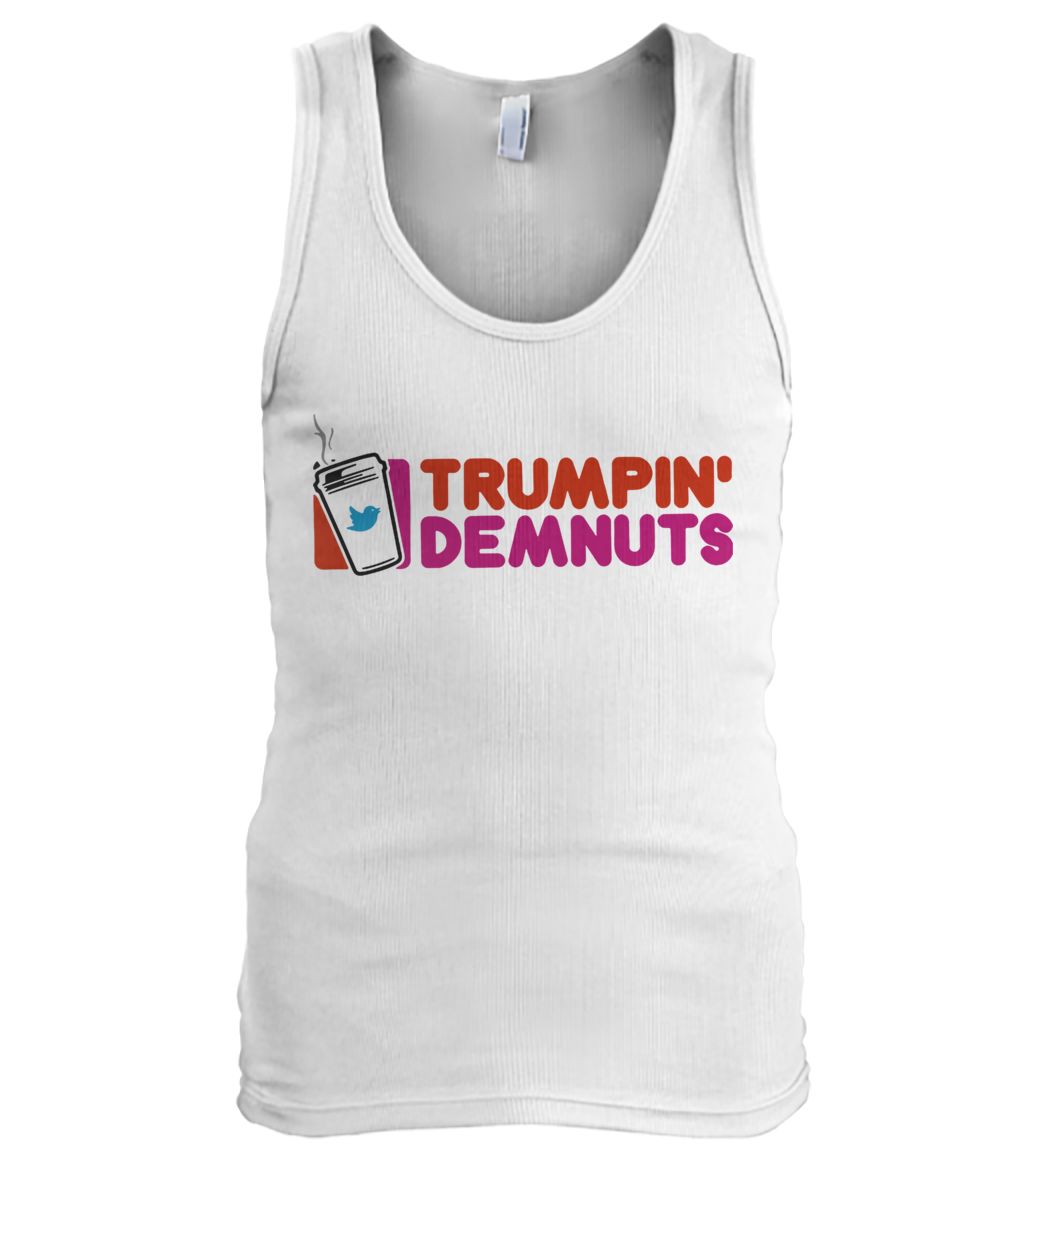 Twitter trumpin demnuts men's tank top